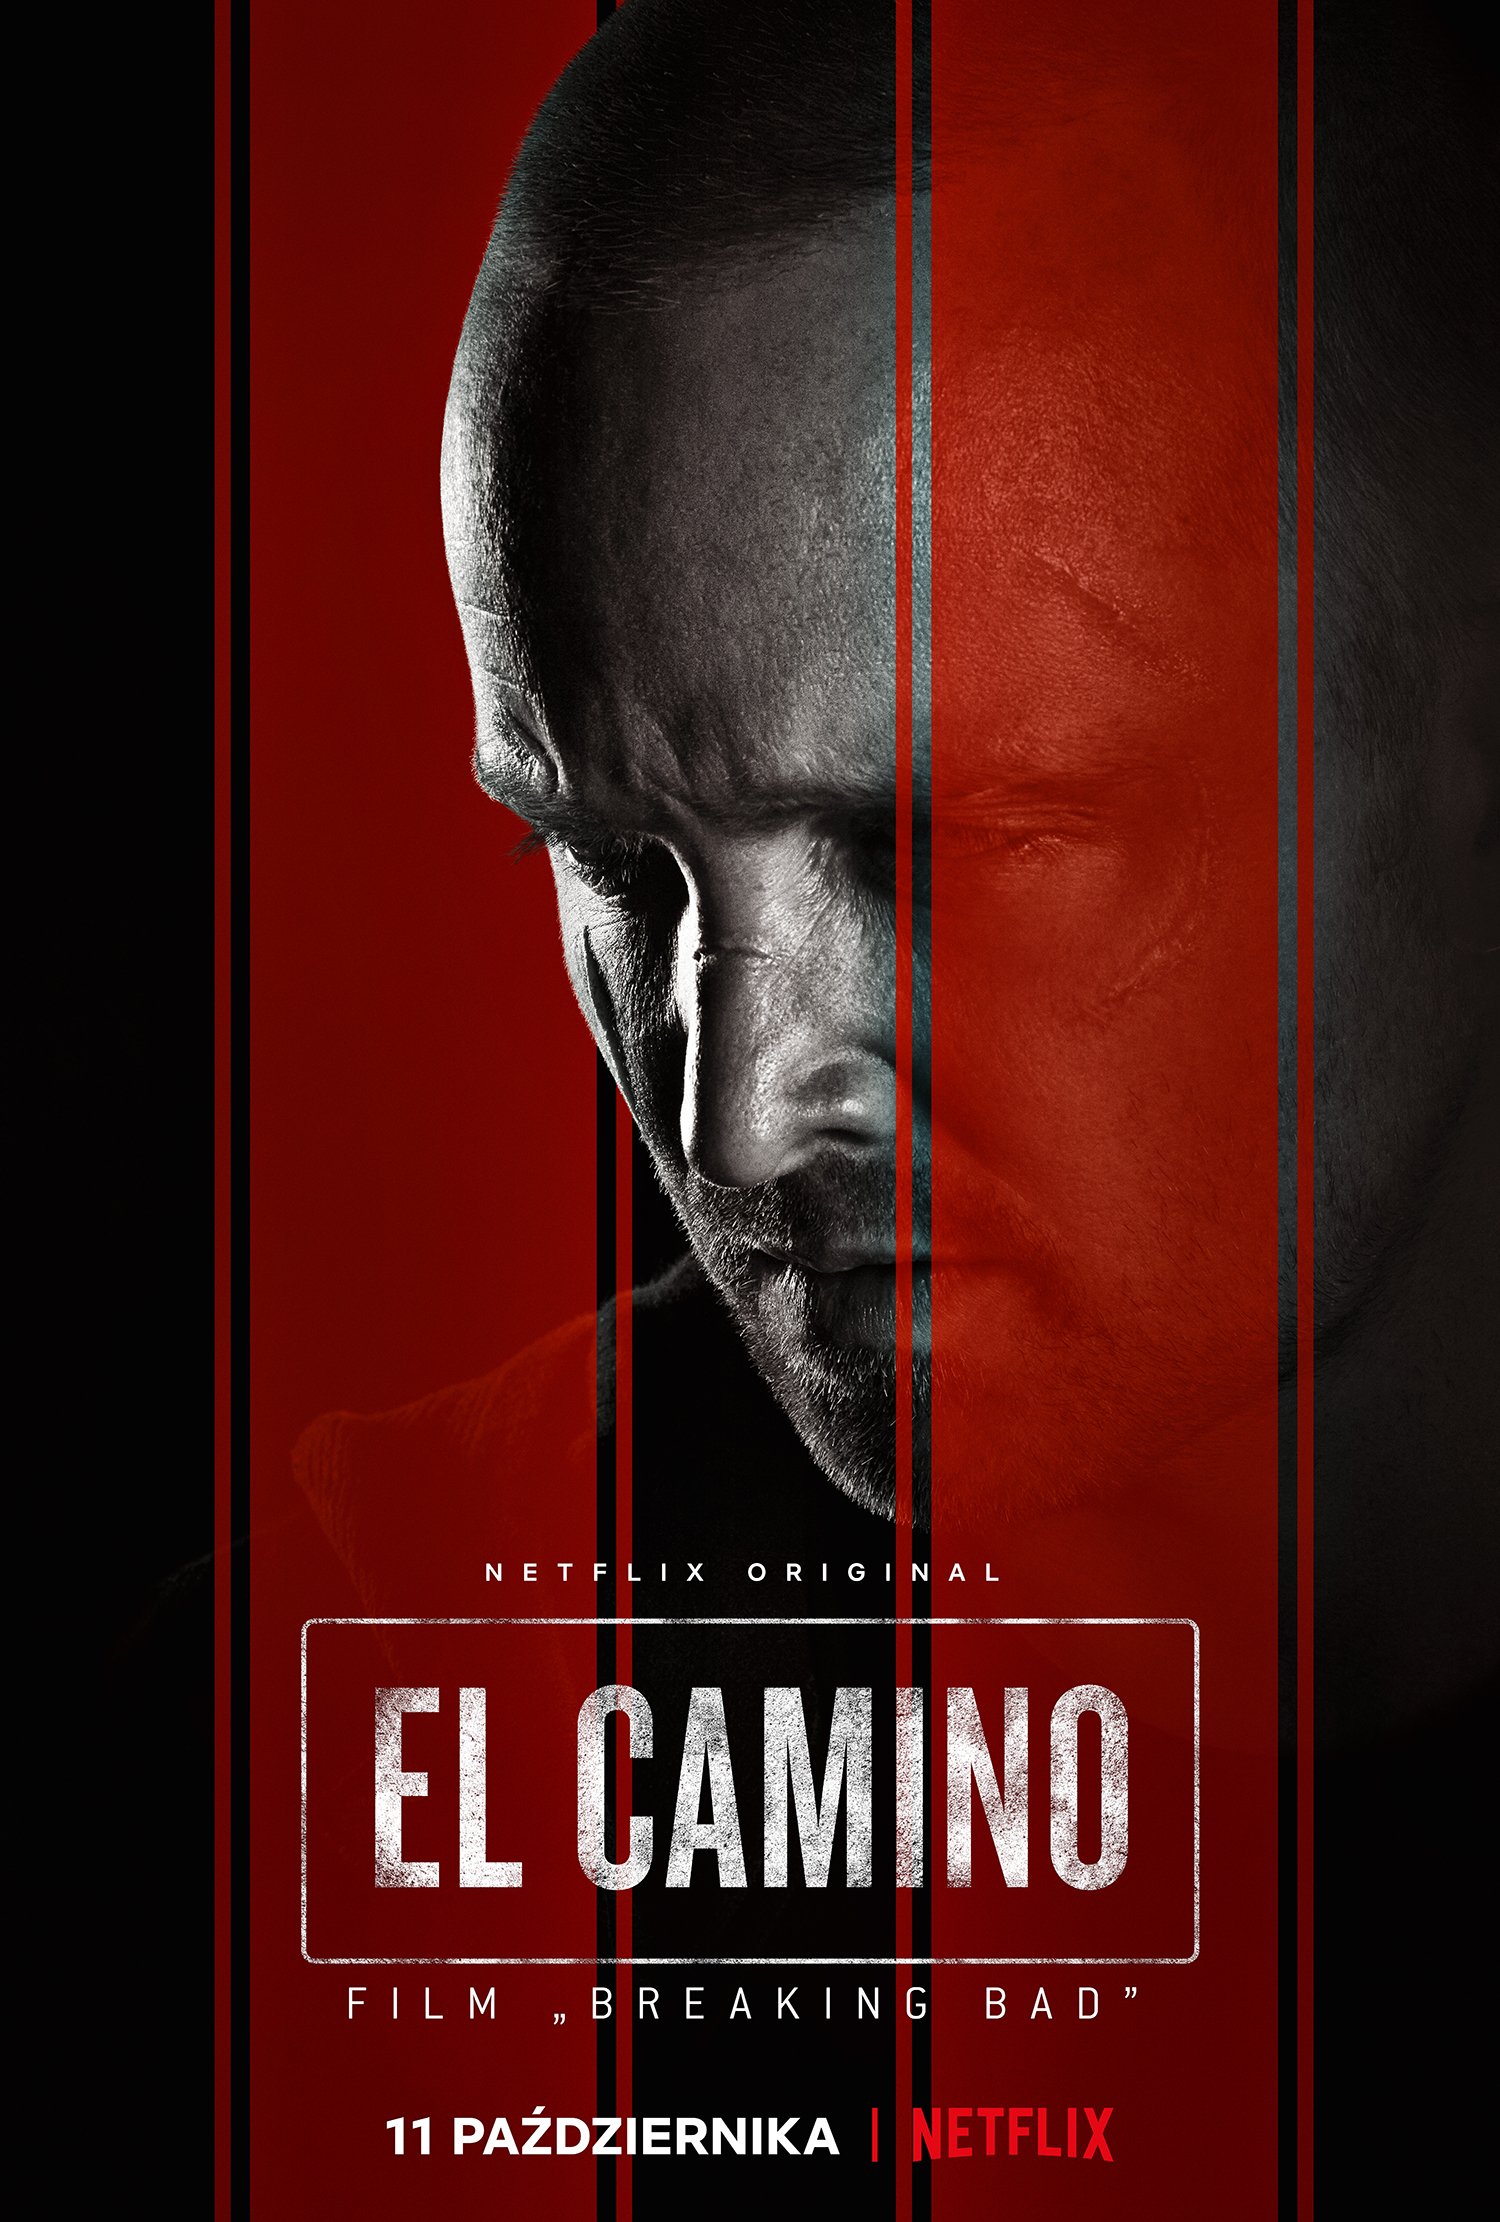 Netflix udostępnił zapowiedź i oficjalny plakat El Camino: film „Breaking bad”